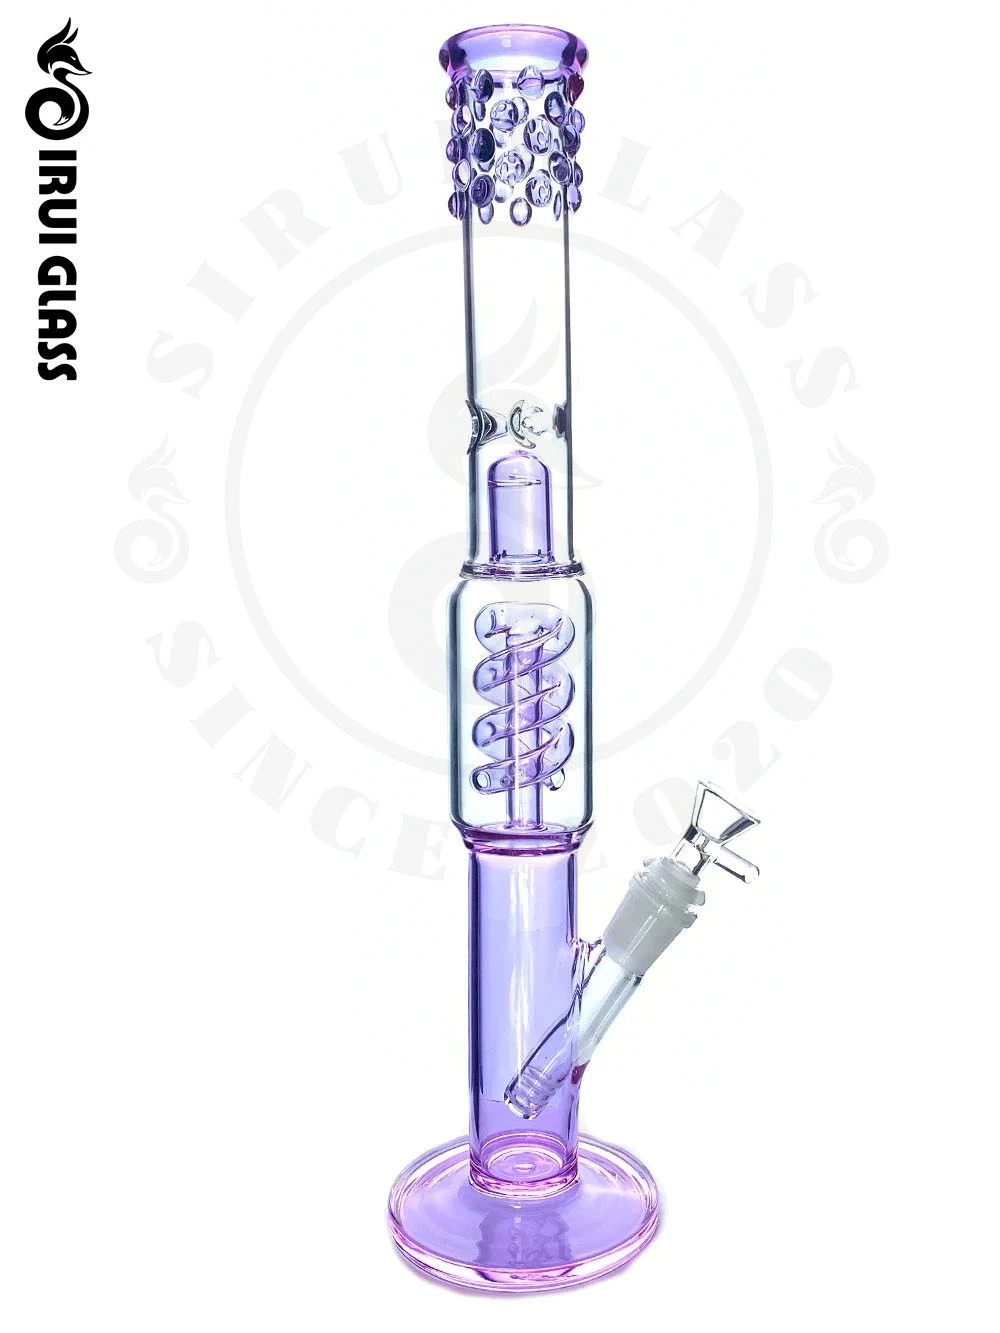 Розовая труба Twist Water Pipe стекло трубка для курения Hookah Grinder Herb Стеклянная трубка для воды, фиолетовый